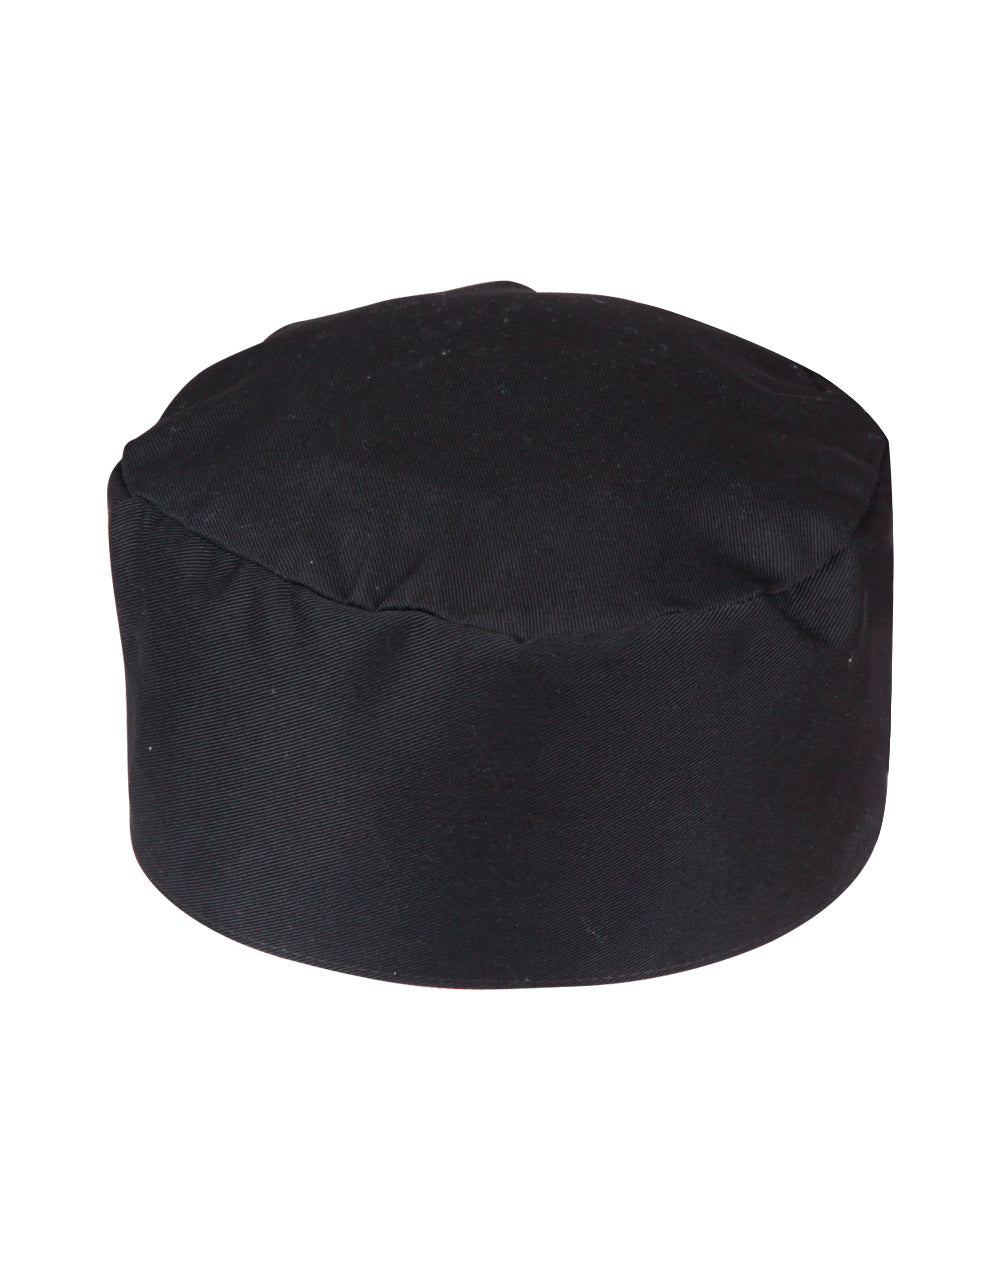 JCCC01 CHEF'S CAP